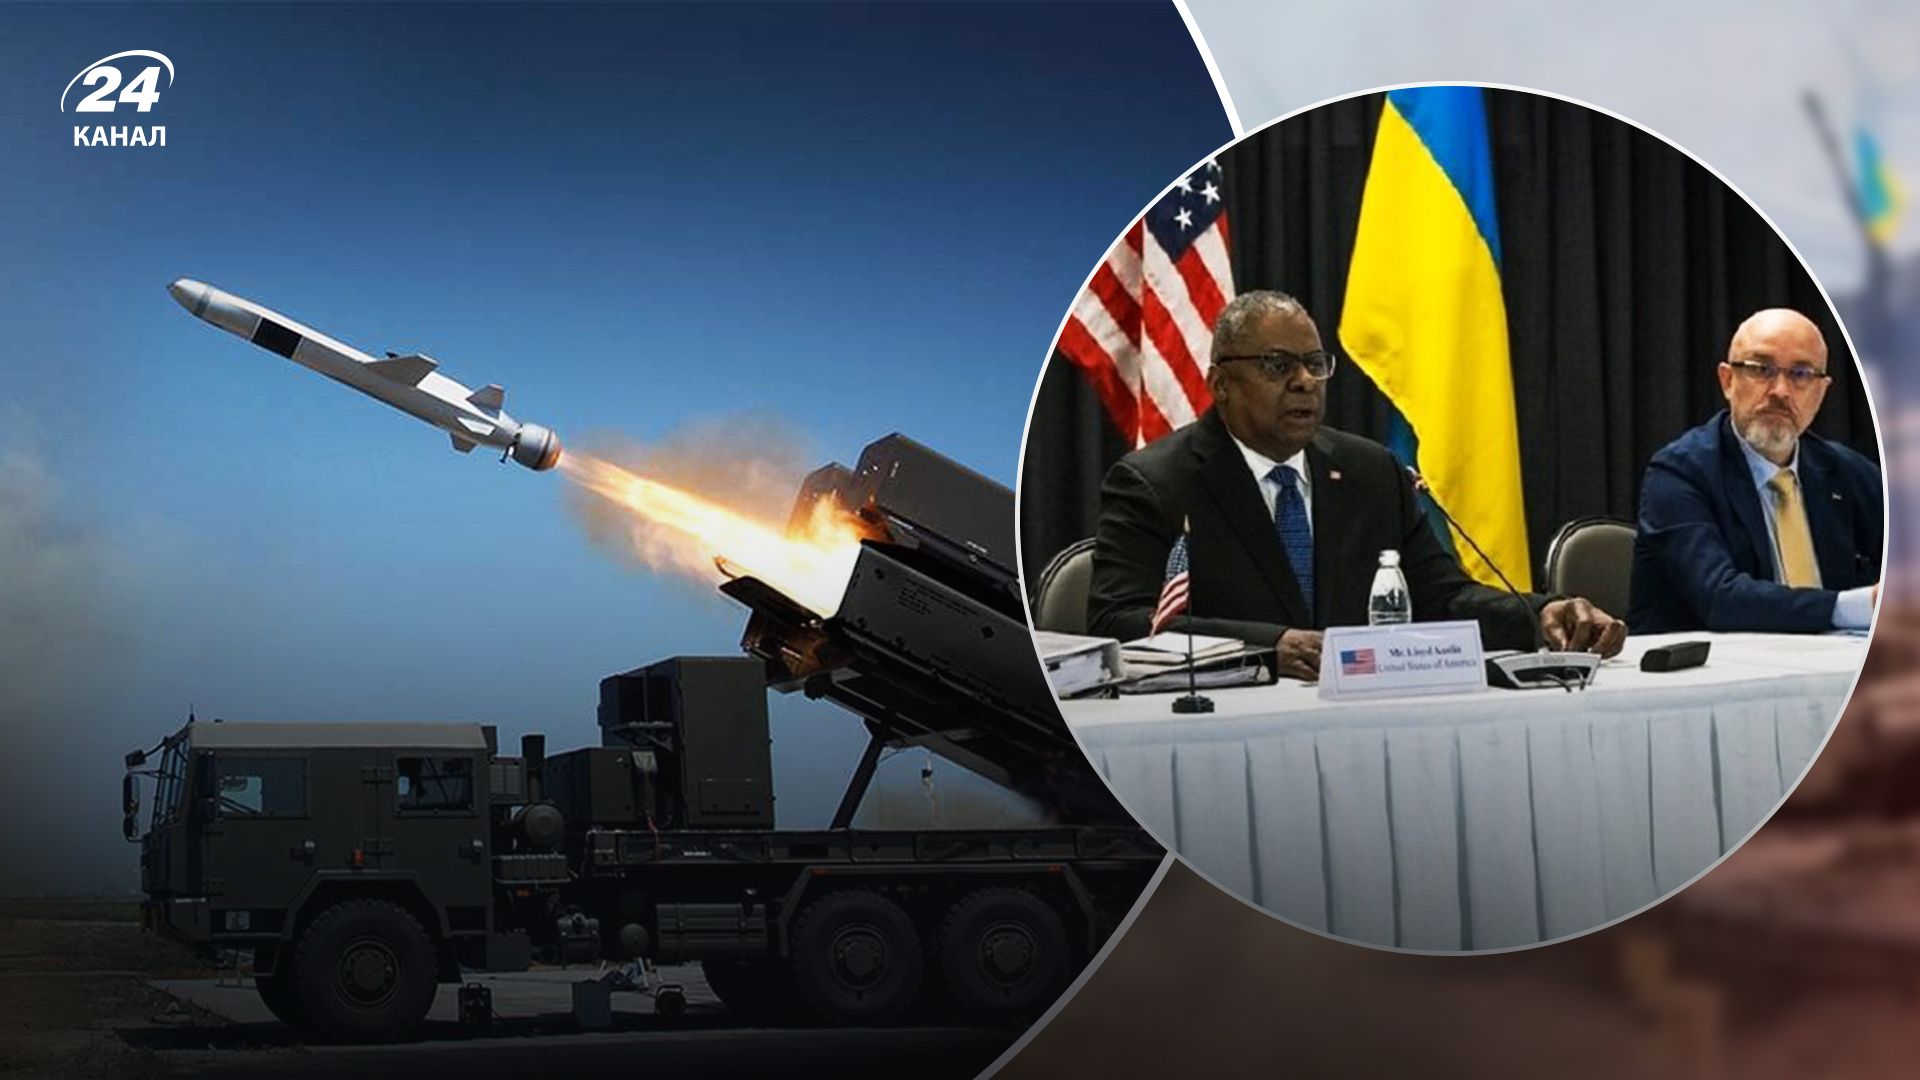 Украинская ПВО и ПРО будут усилены благодаря помощи участников встречи в Рамштайне